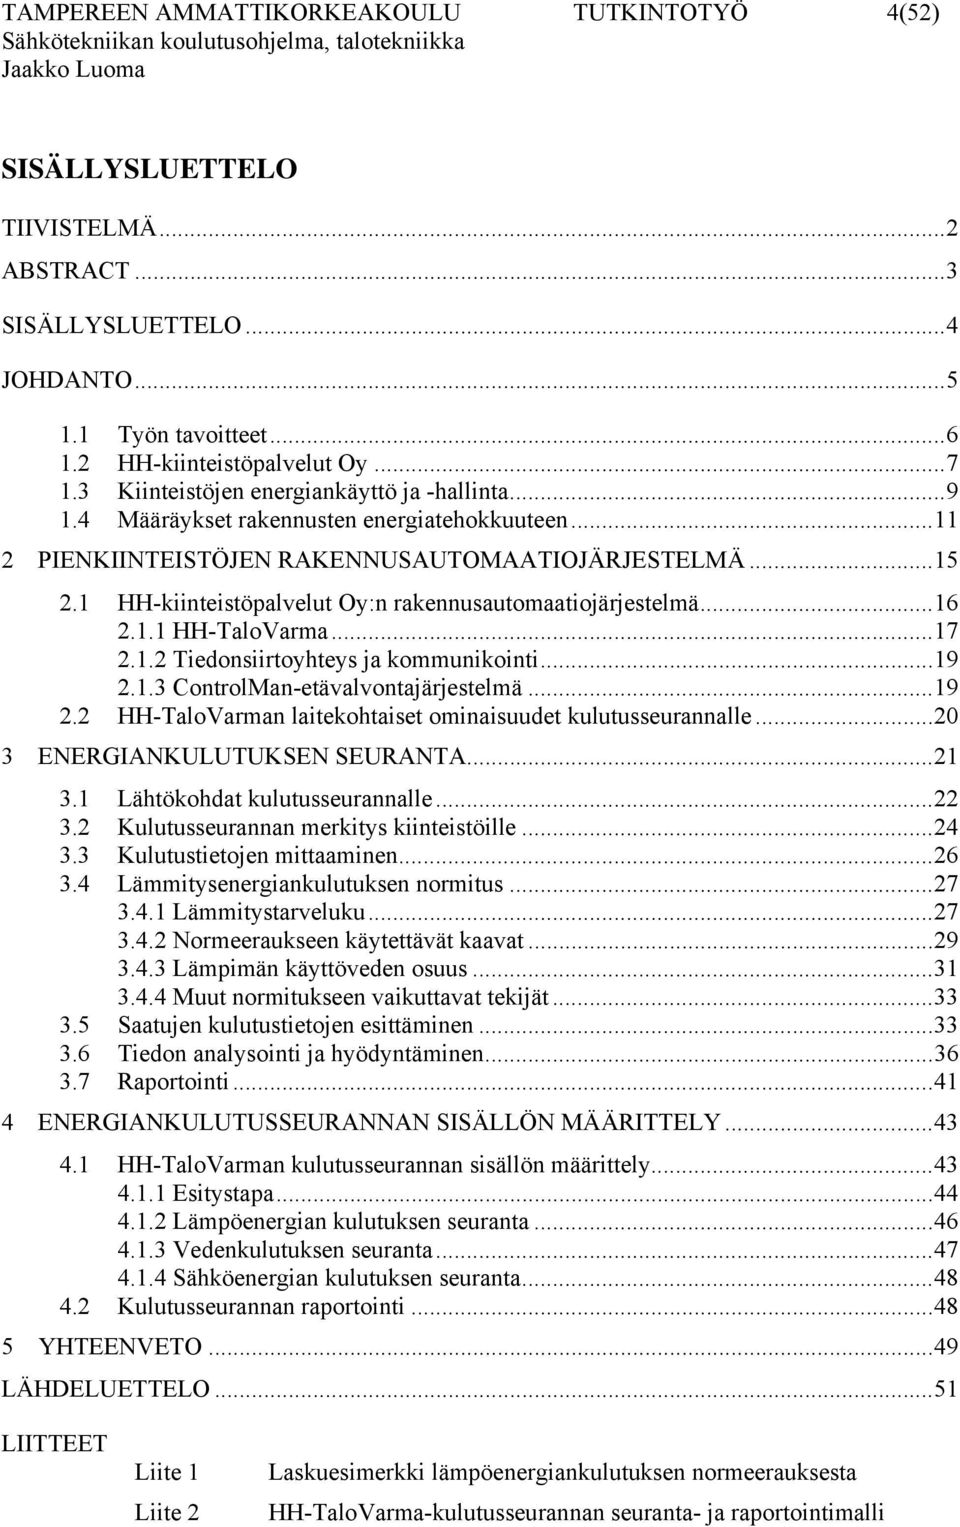 1 HH-kiinteistöpalvelut Oy:n rakennusautomaatiojärjestelmä...16 2.1.1 HH-TaloVarma...17 2.1.2 Tiedonsiirtoyhteys ja kommunikointi...19 2.1.3 ControlMan-etävalvontajärjestelmä...19 2.2 HH-TaloVarman laitekohtaiset ominaisuudet kulutusseurannalle.